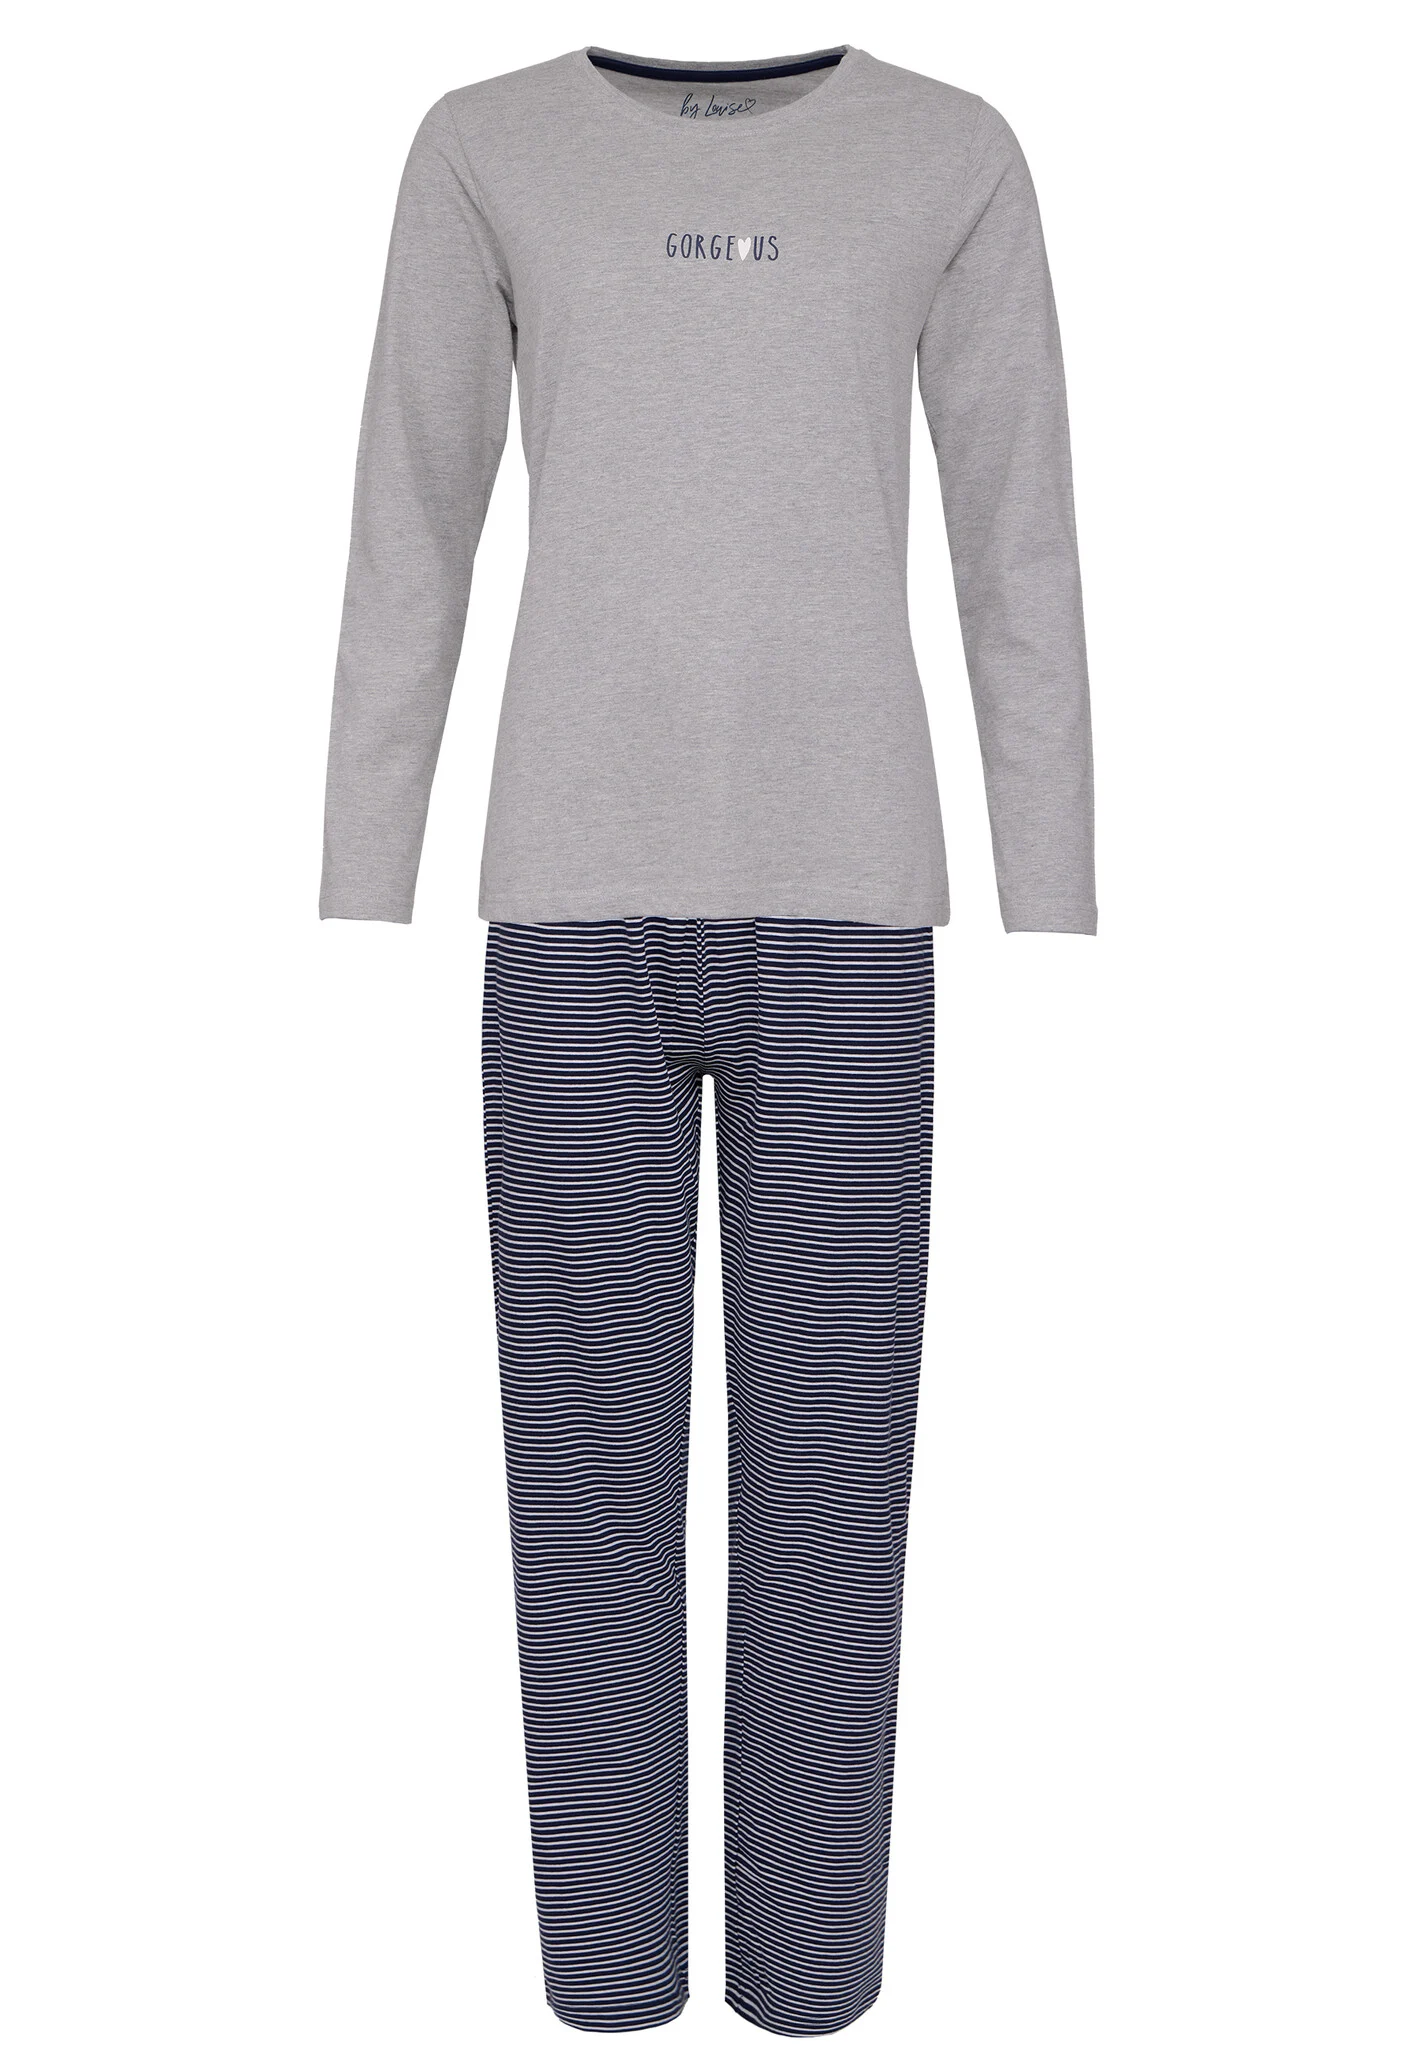 Afbeelding van By Louise Dames pyjama set lang katoen grijs / donkerblauw gestreept